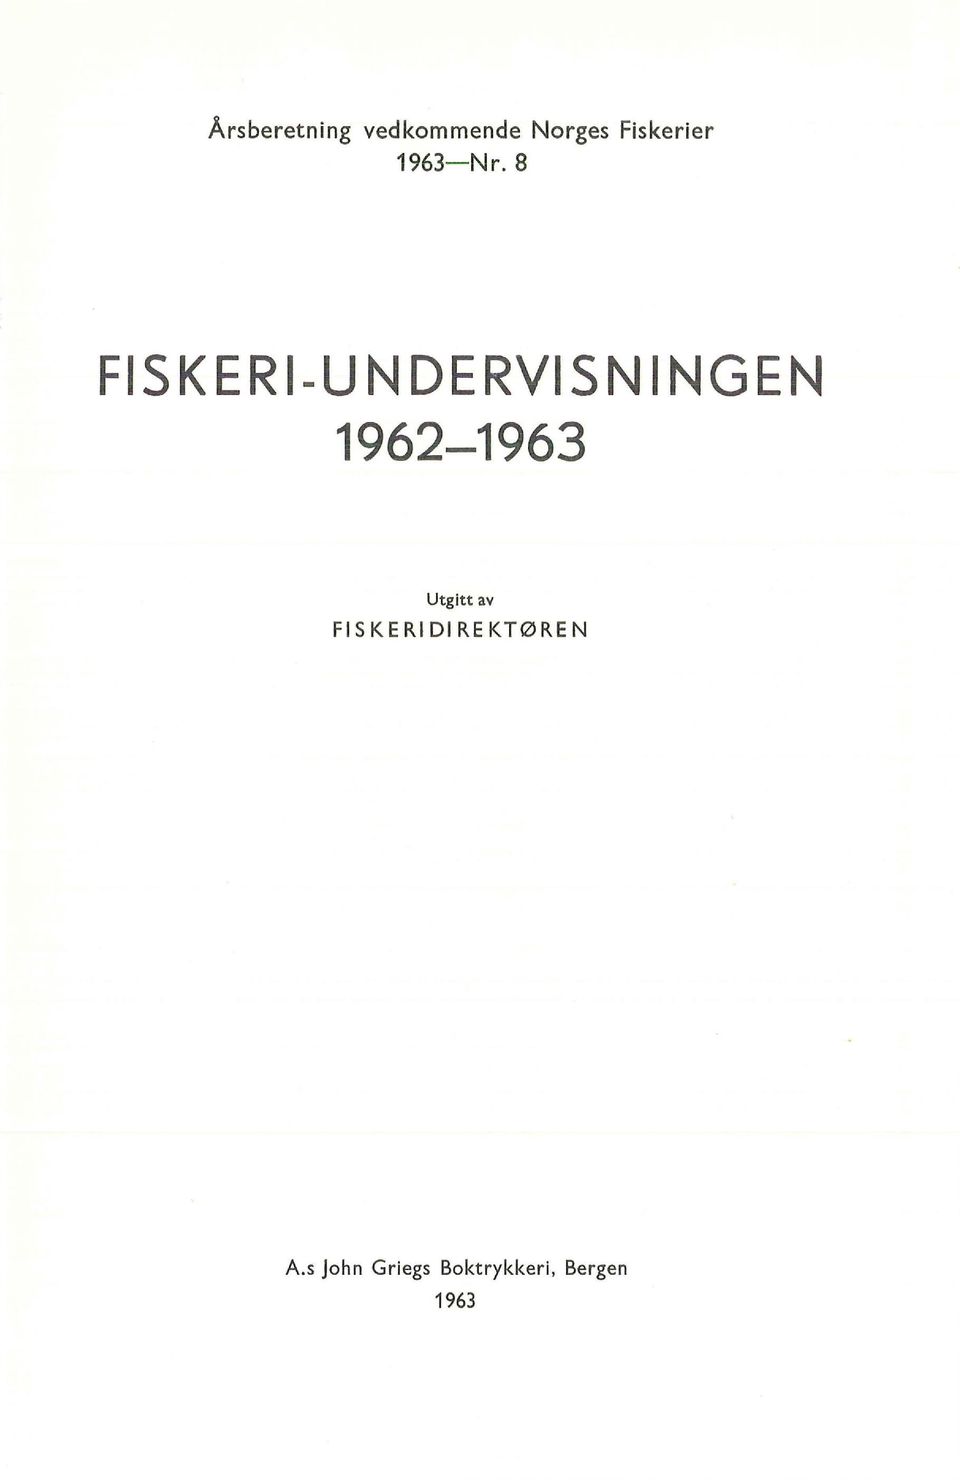 8 FISK ER 1-U N DERVIS N NGENI 1962-1963